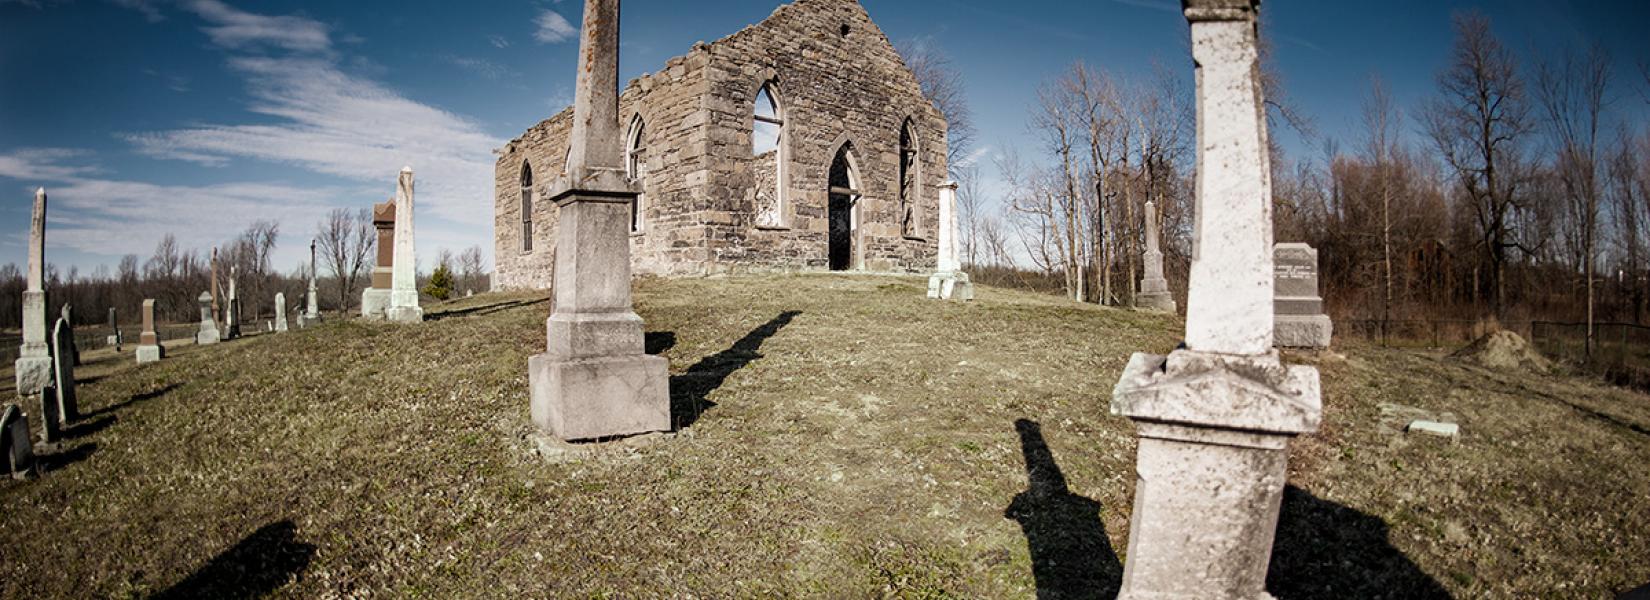 Le cimetière et l'église abandonnée de Rivière-La Guerre